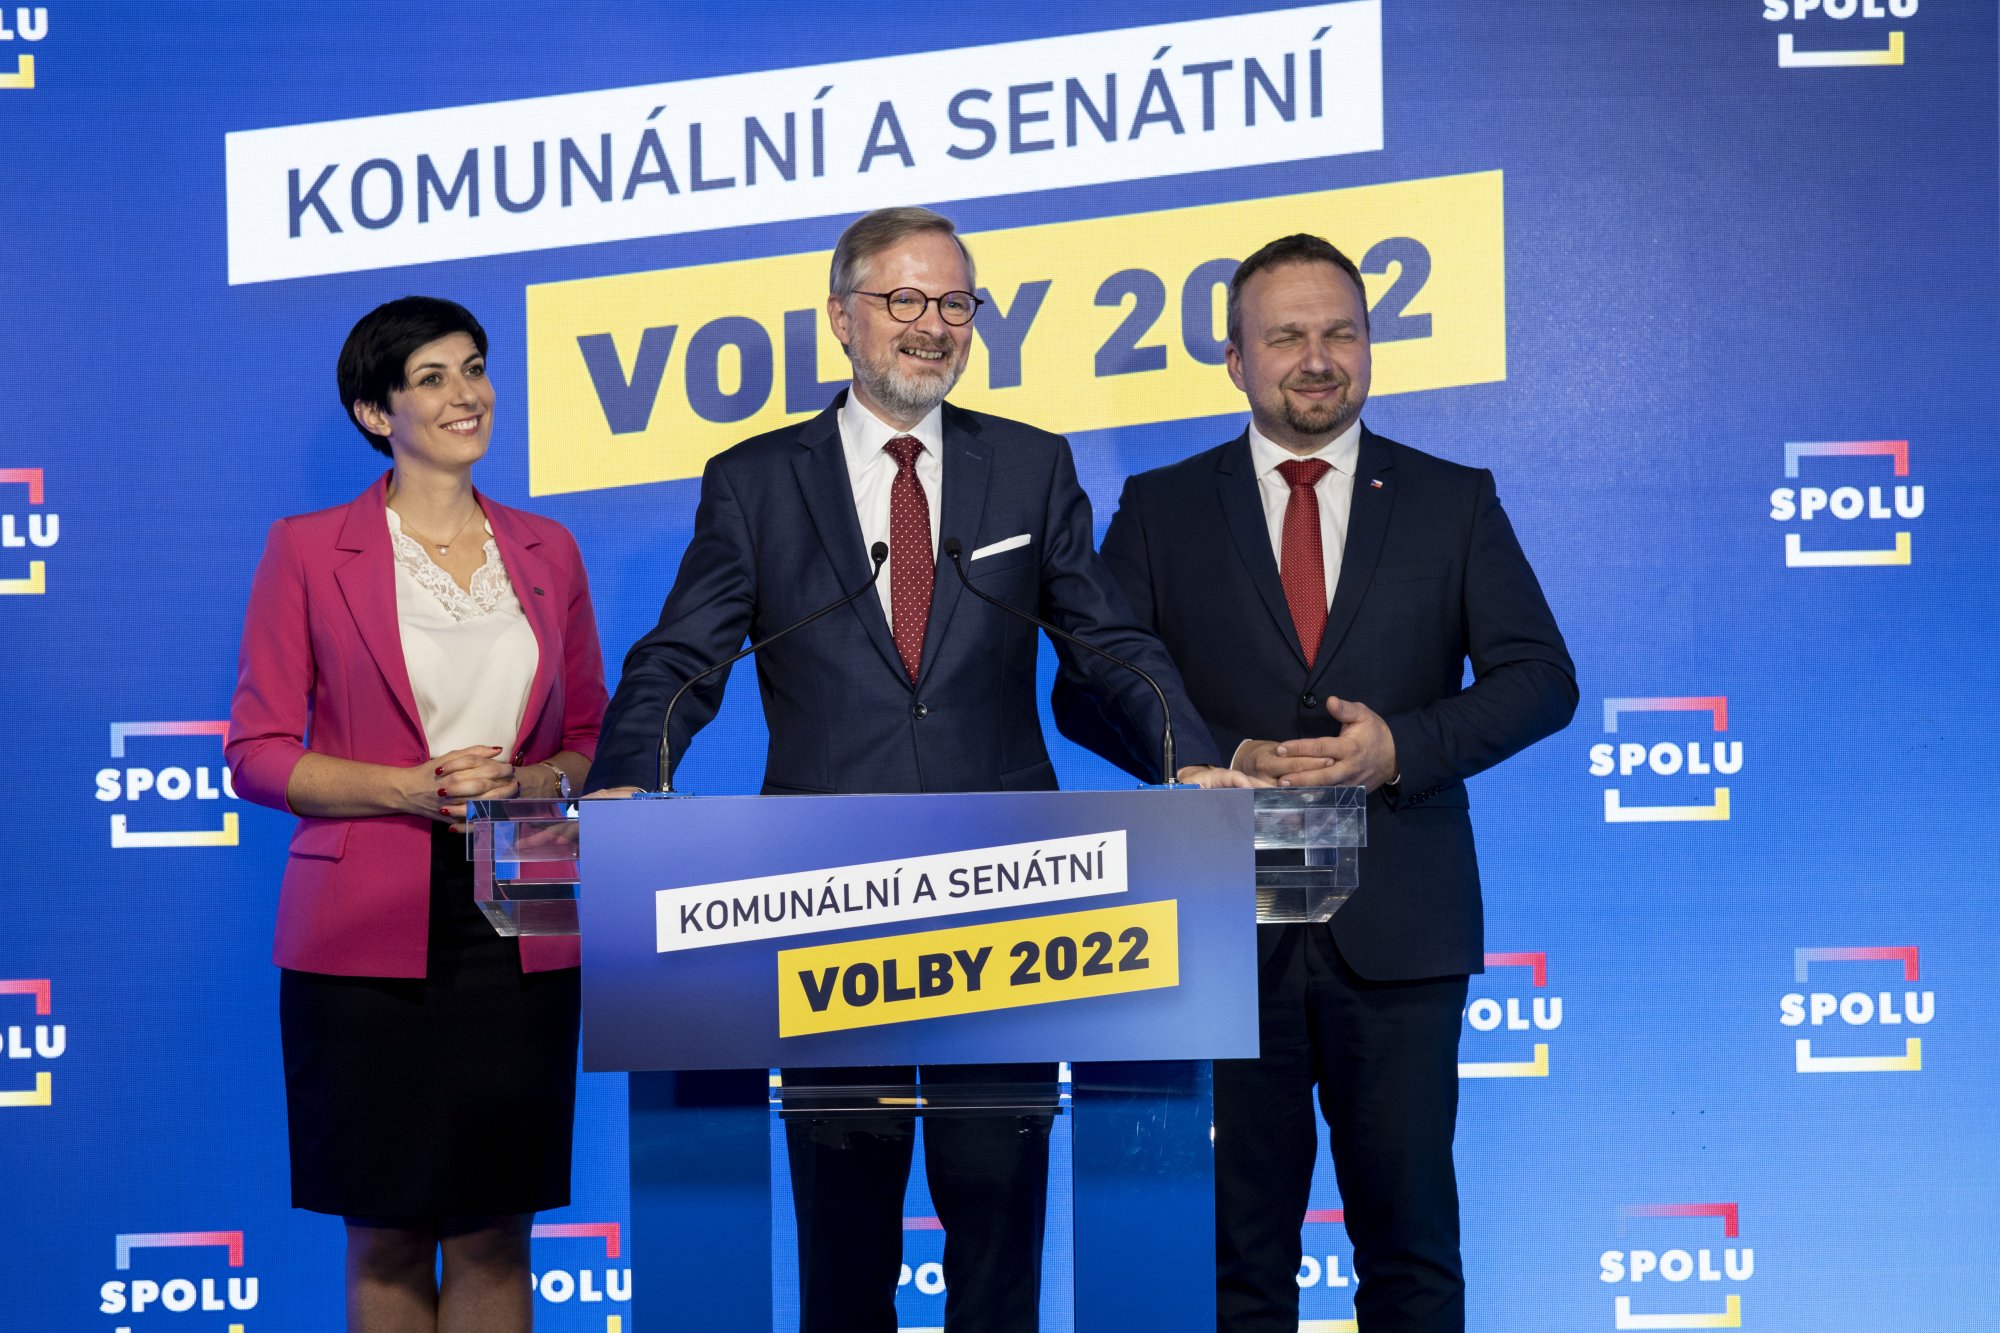 Koalice SPOLU uspěla v komunálních volbách a udělala důležitý krok k posílení v Senátu